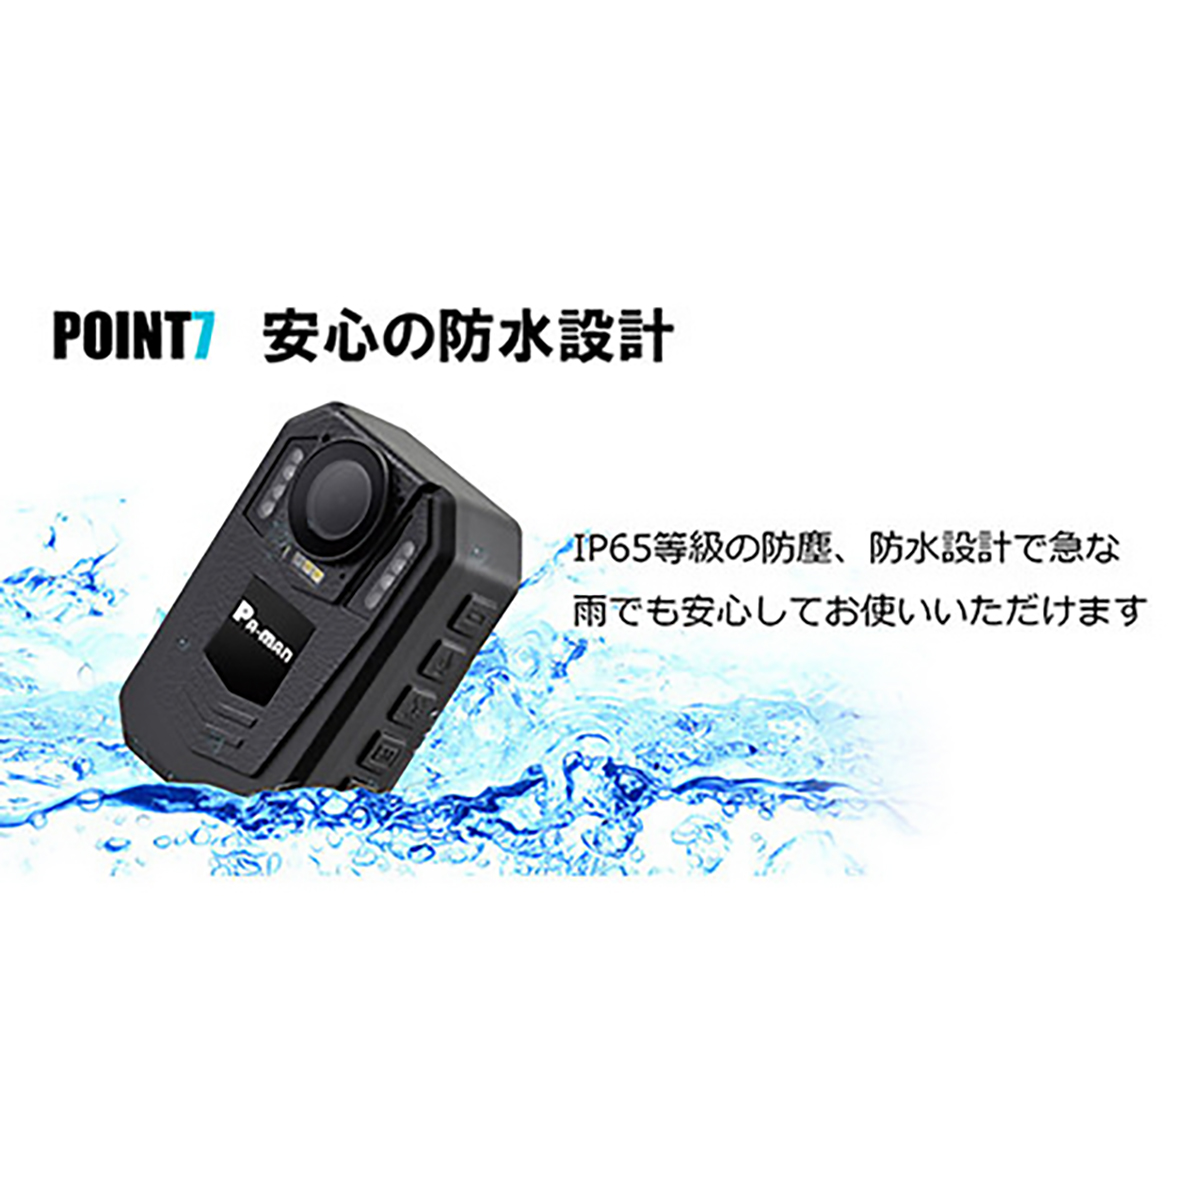 ボディーカメラ REAL Rec Pro 防水